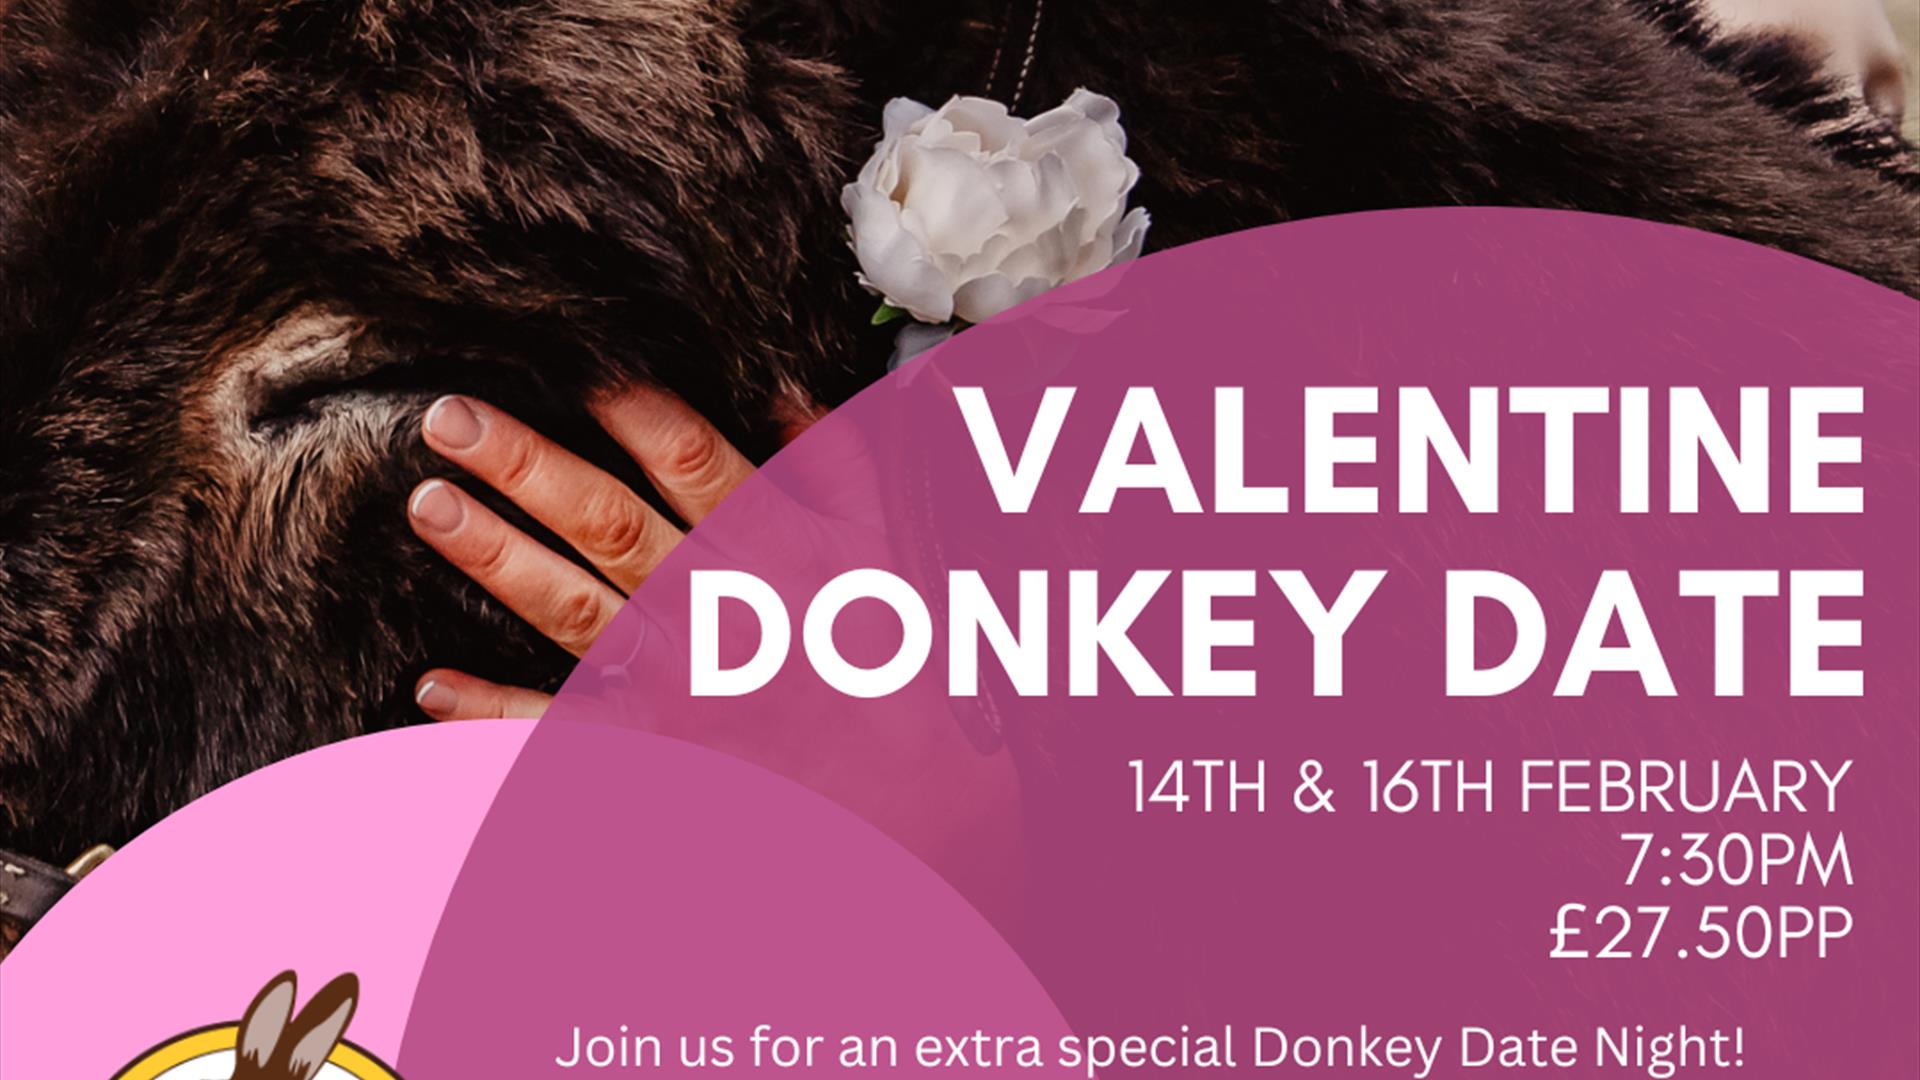 Valentine Donkey Date Poster